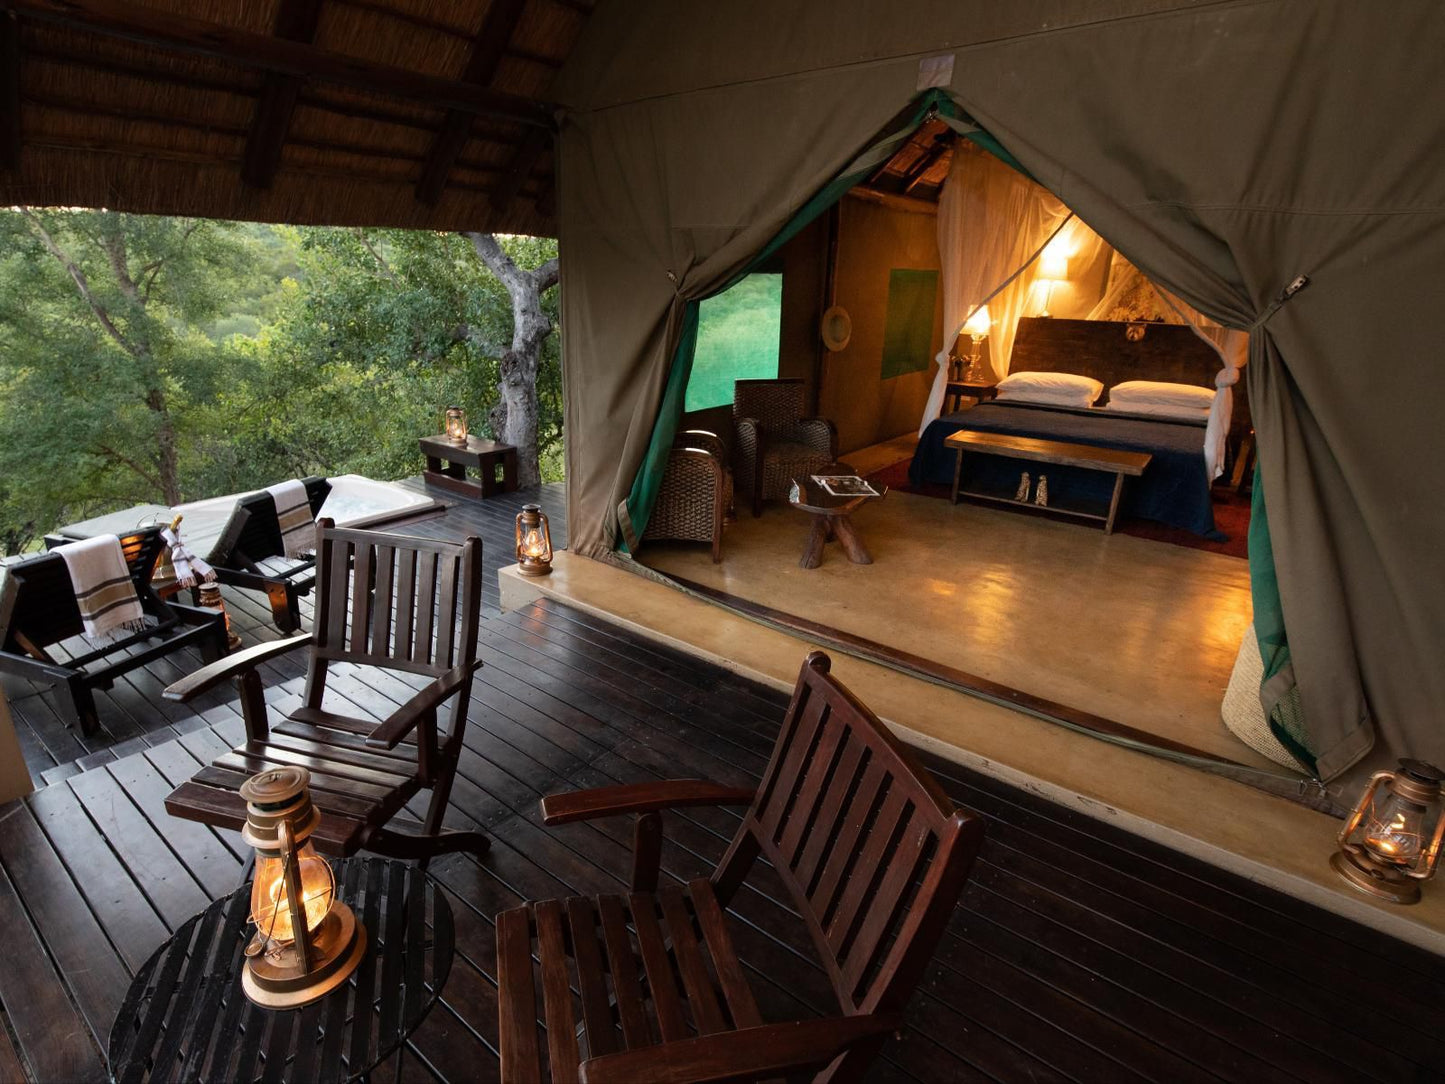 Parsons Hilltop Safari Camp Hoedspruit Limpopo Province South Africa Tent, Architecture